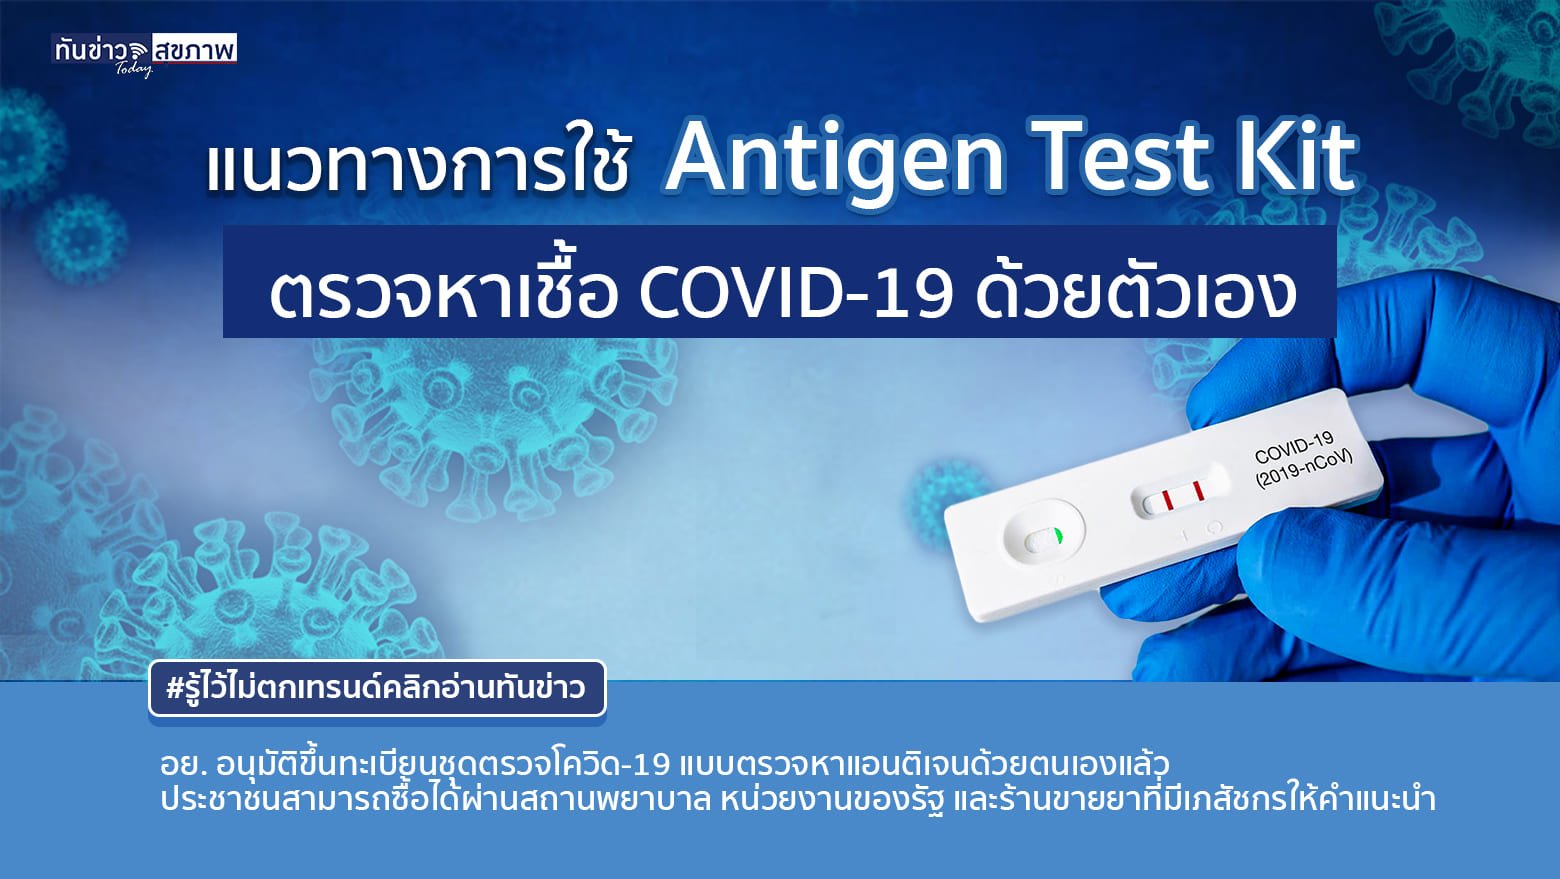 แนวทางการใช้ Antigen Test Kit ตรวจหาเชื้อ COVID-19 ด้วยตัวเอง